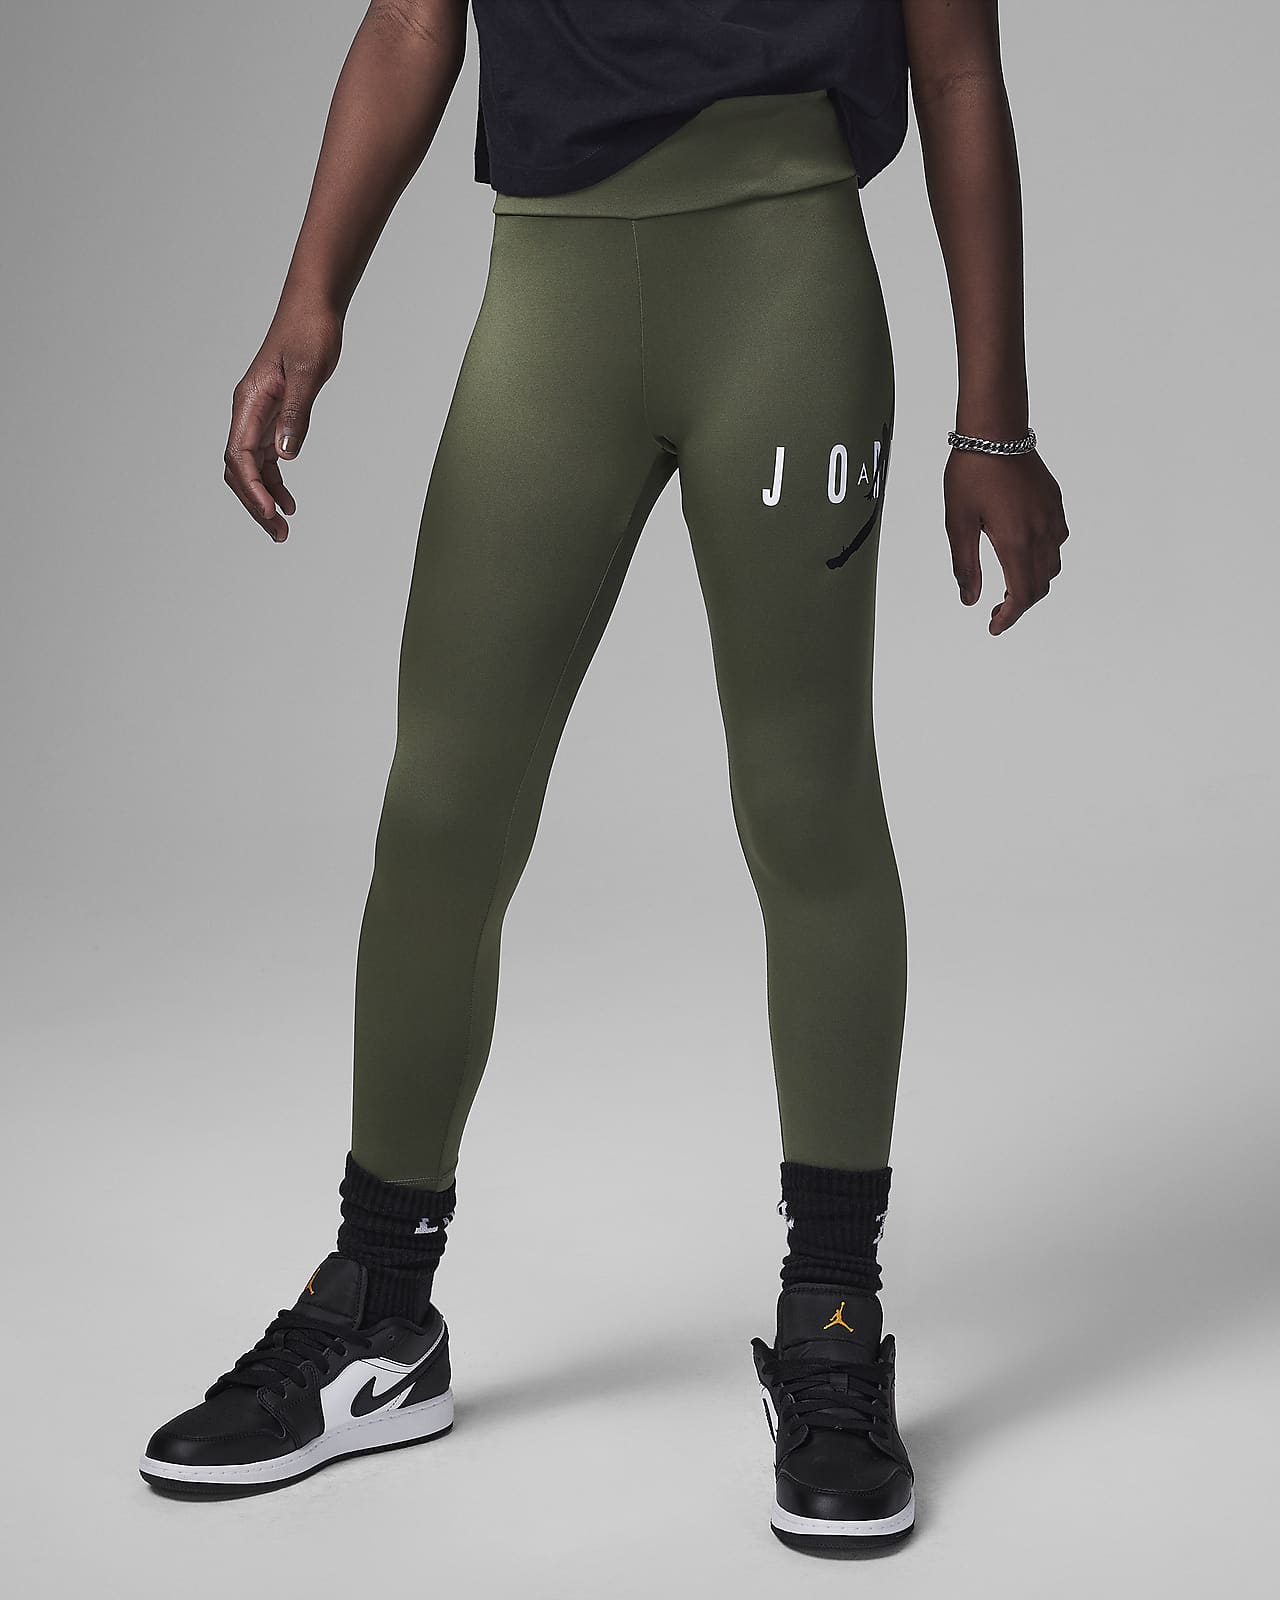 Jordan Tights & Leggings. Nike CA